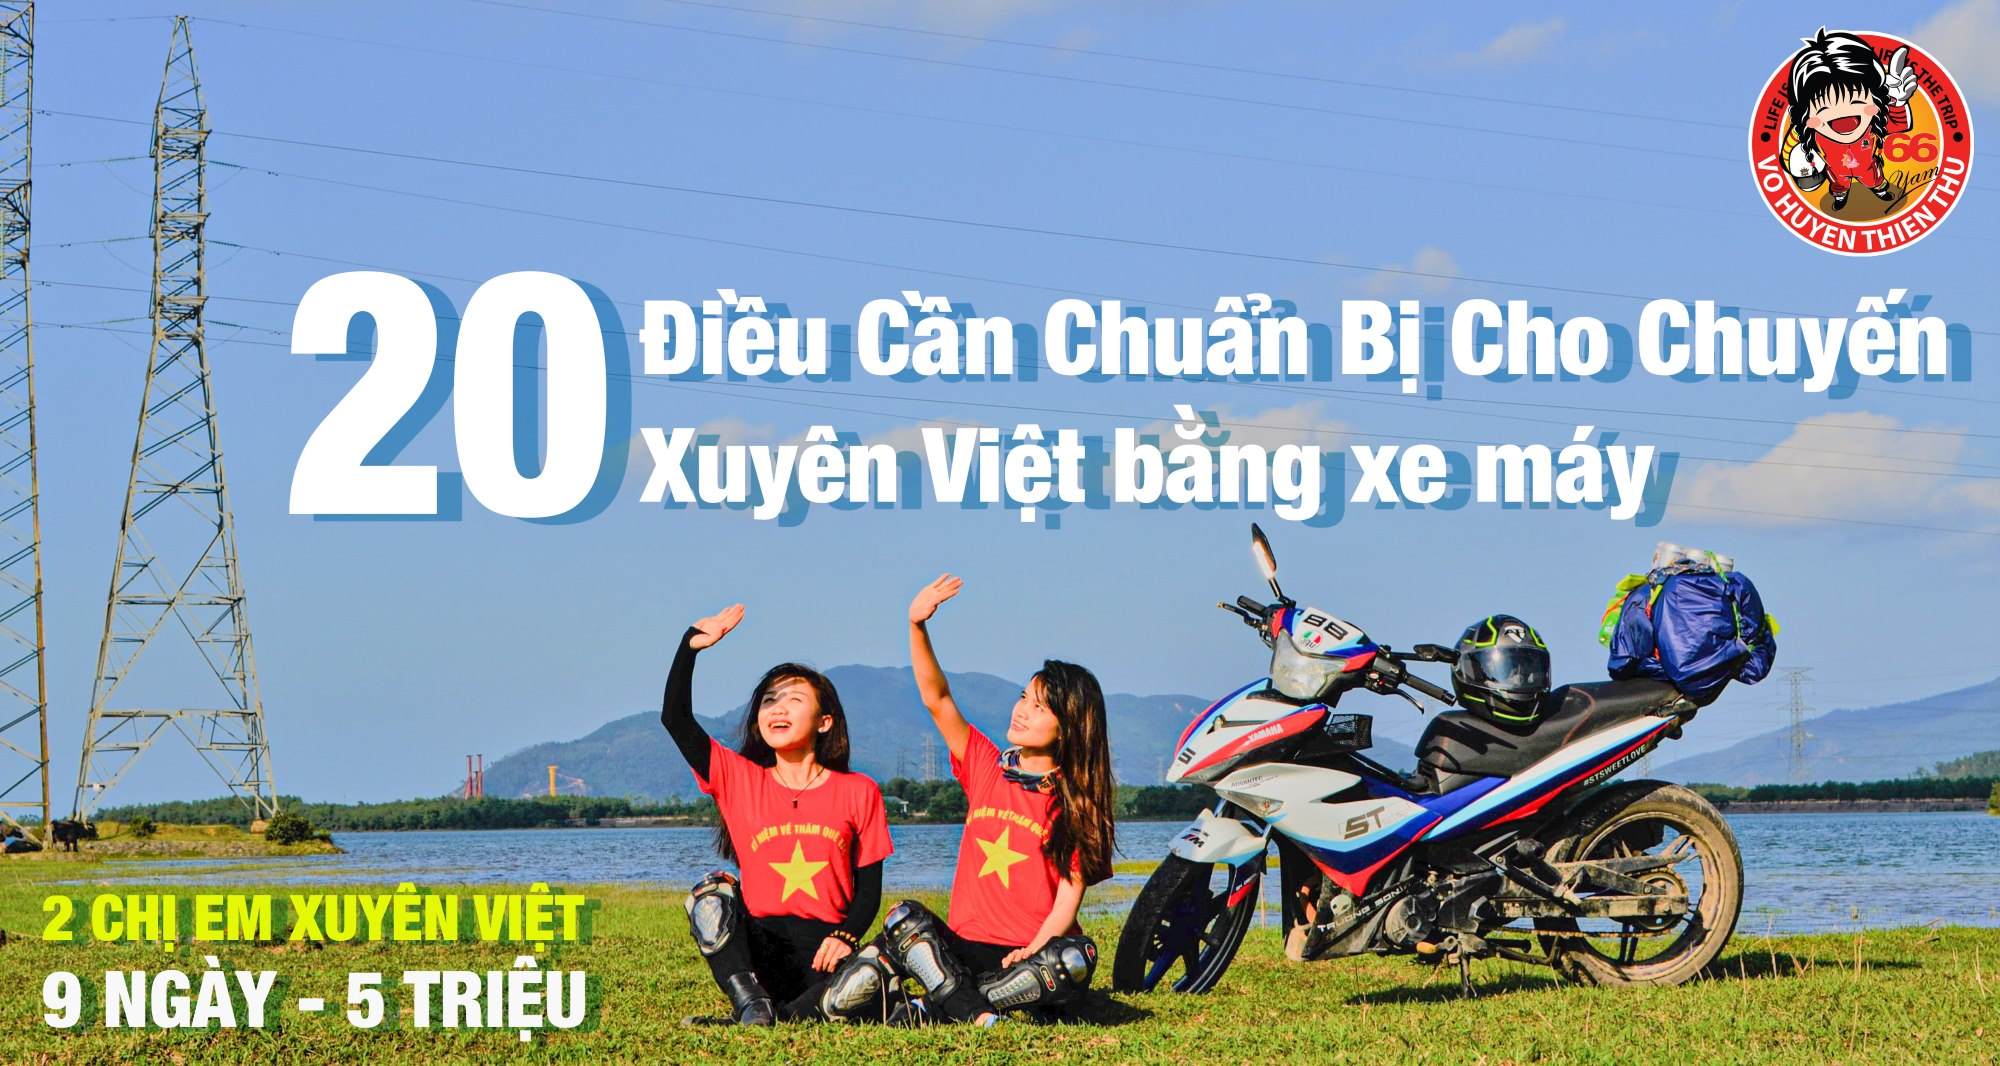 20 Điều Cần Chuẩn Bị Cho Chuyến Xuyên Việt Bằng Xe Máy